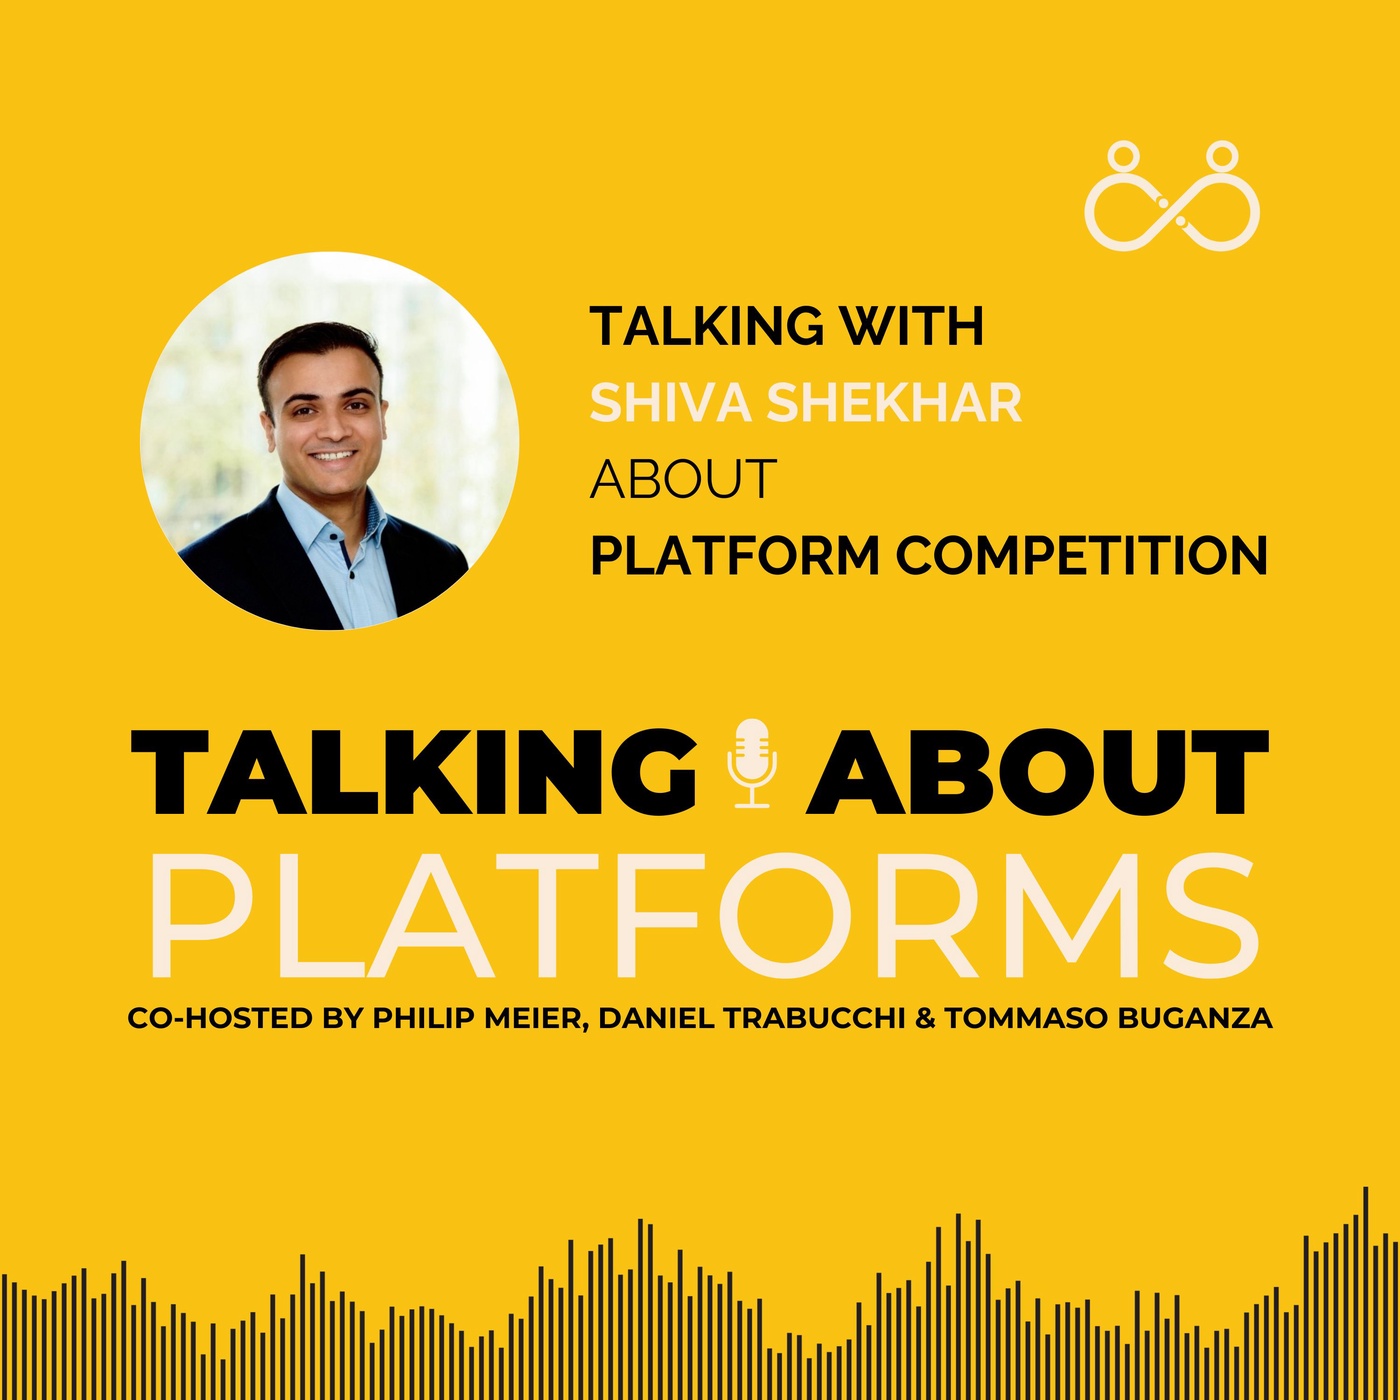 Platform competition with Shiva Shekhar